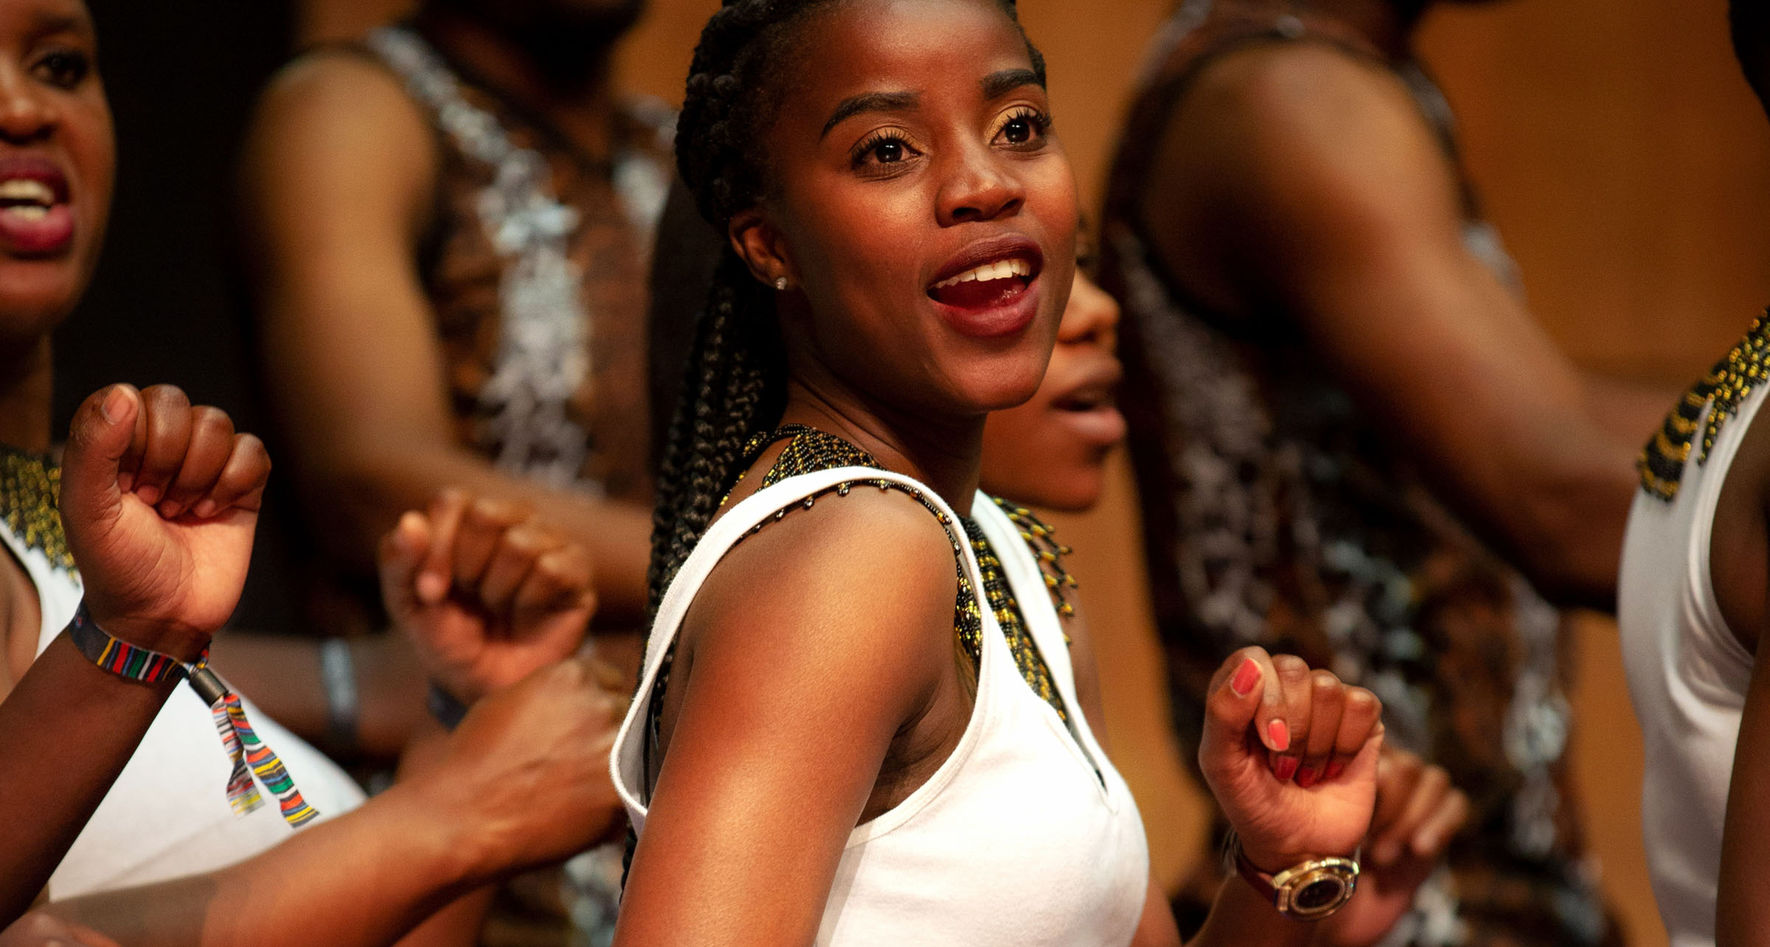 Südafrikanischer Chor auf der Bühne | Wie man das richtige Repertoire für den Chor auswählt © Nolte Photography